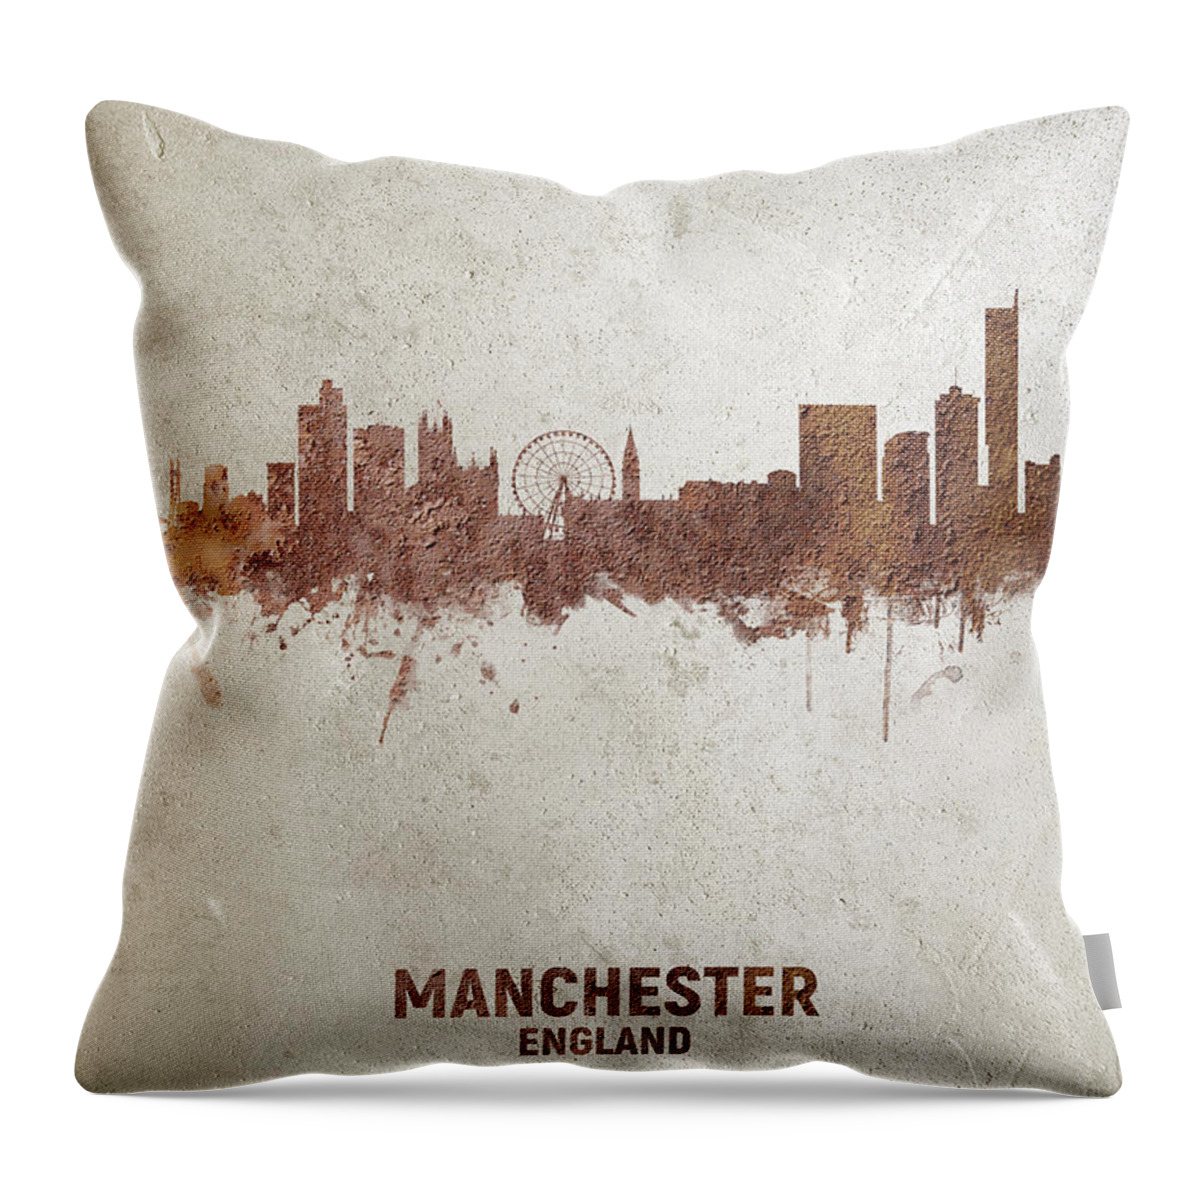 Manchester Throw Pillow featuring the digital art Manchester England Rust Skyline by Michael Tompsett